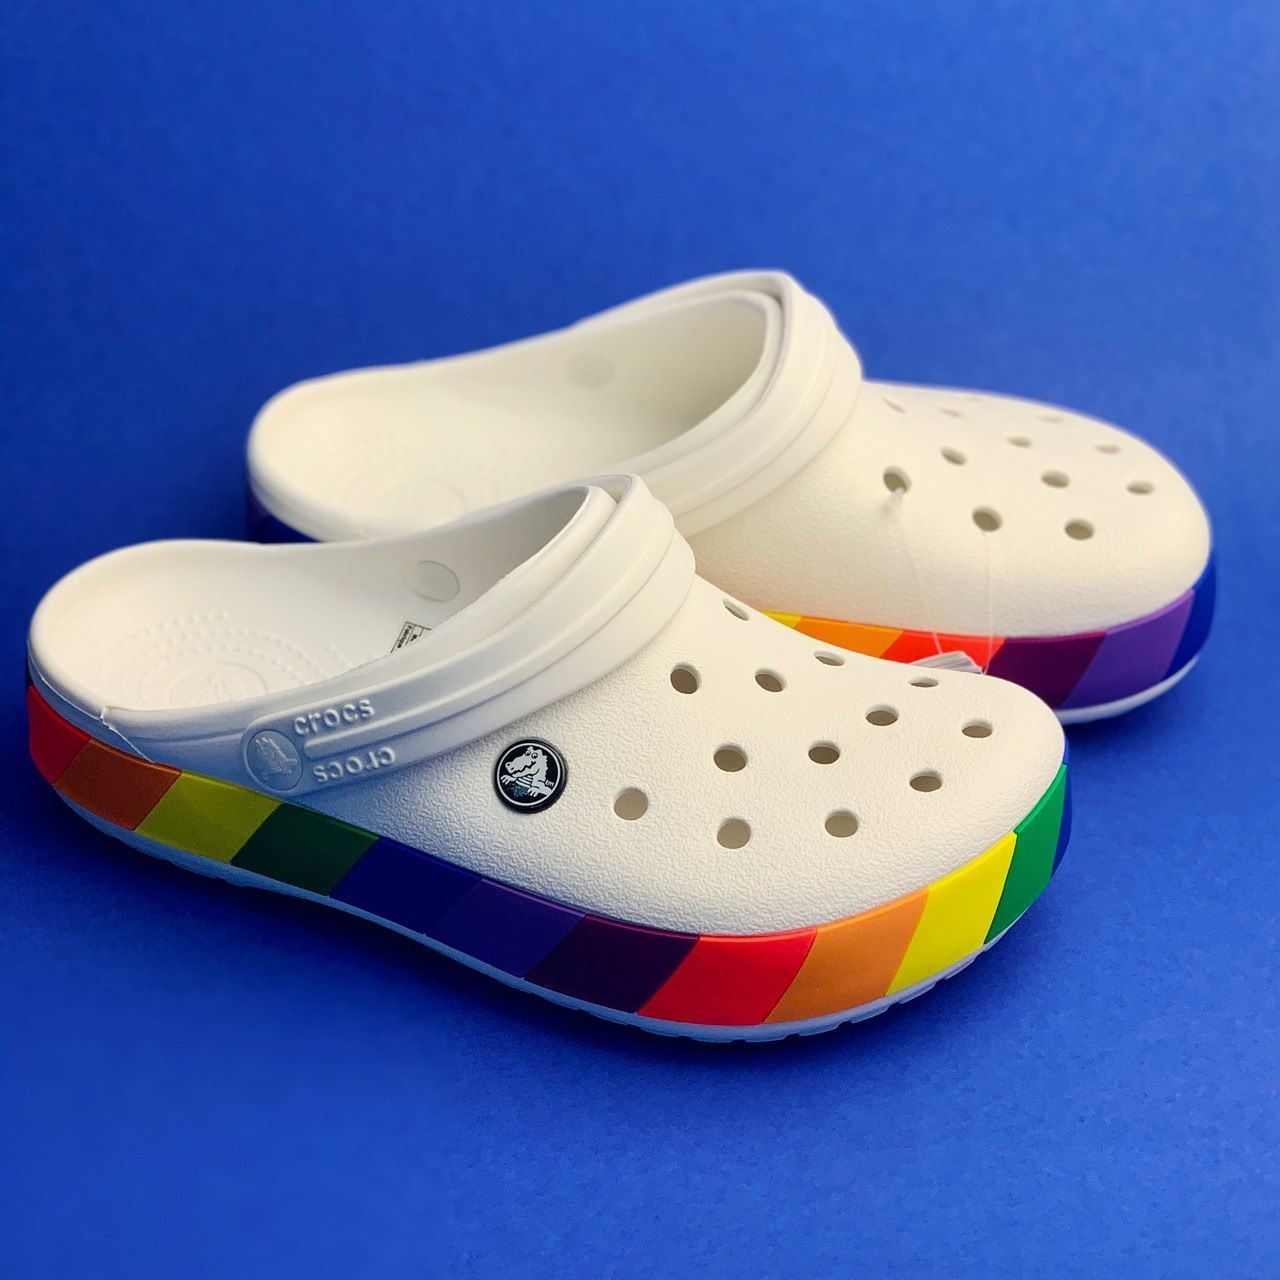 Новинка 2020г.!Crocs Crocband Rainbow Blok Clog!